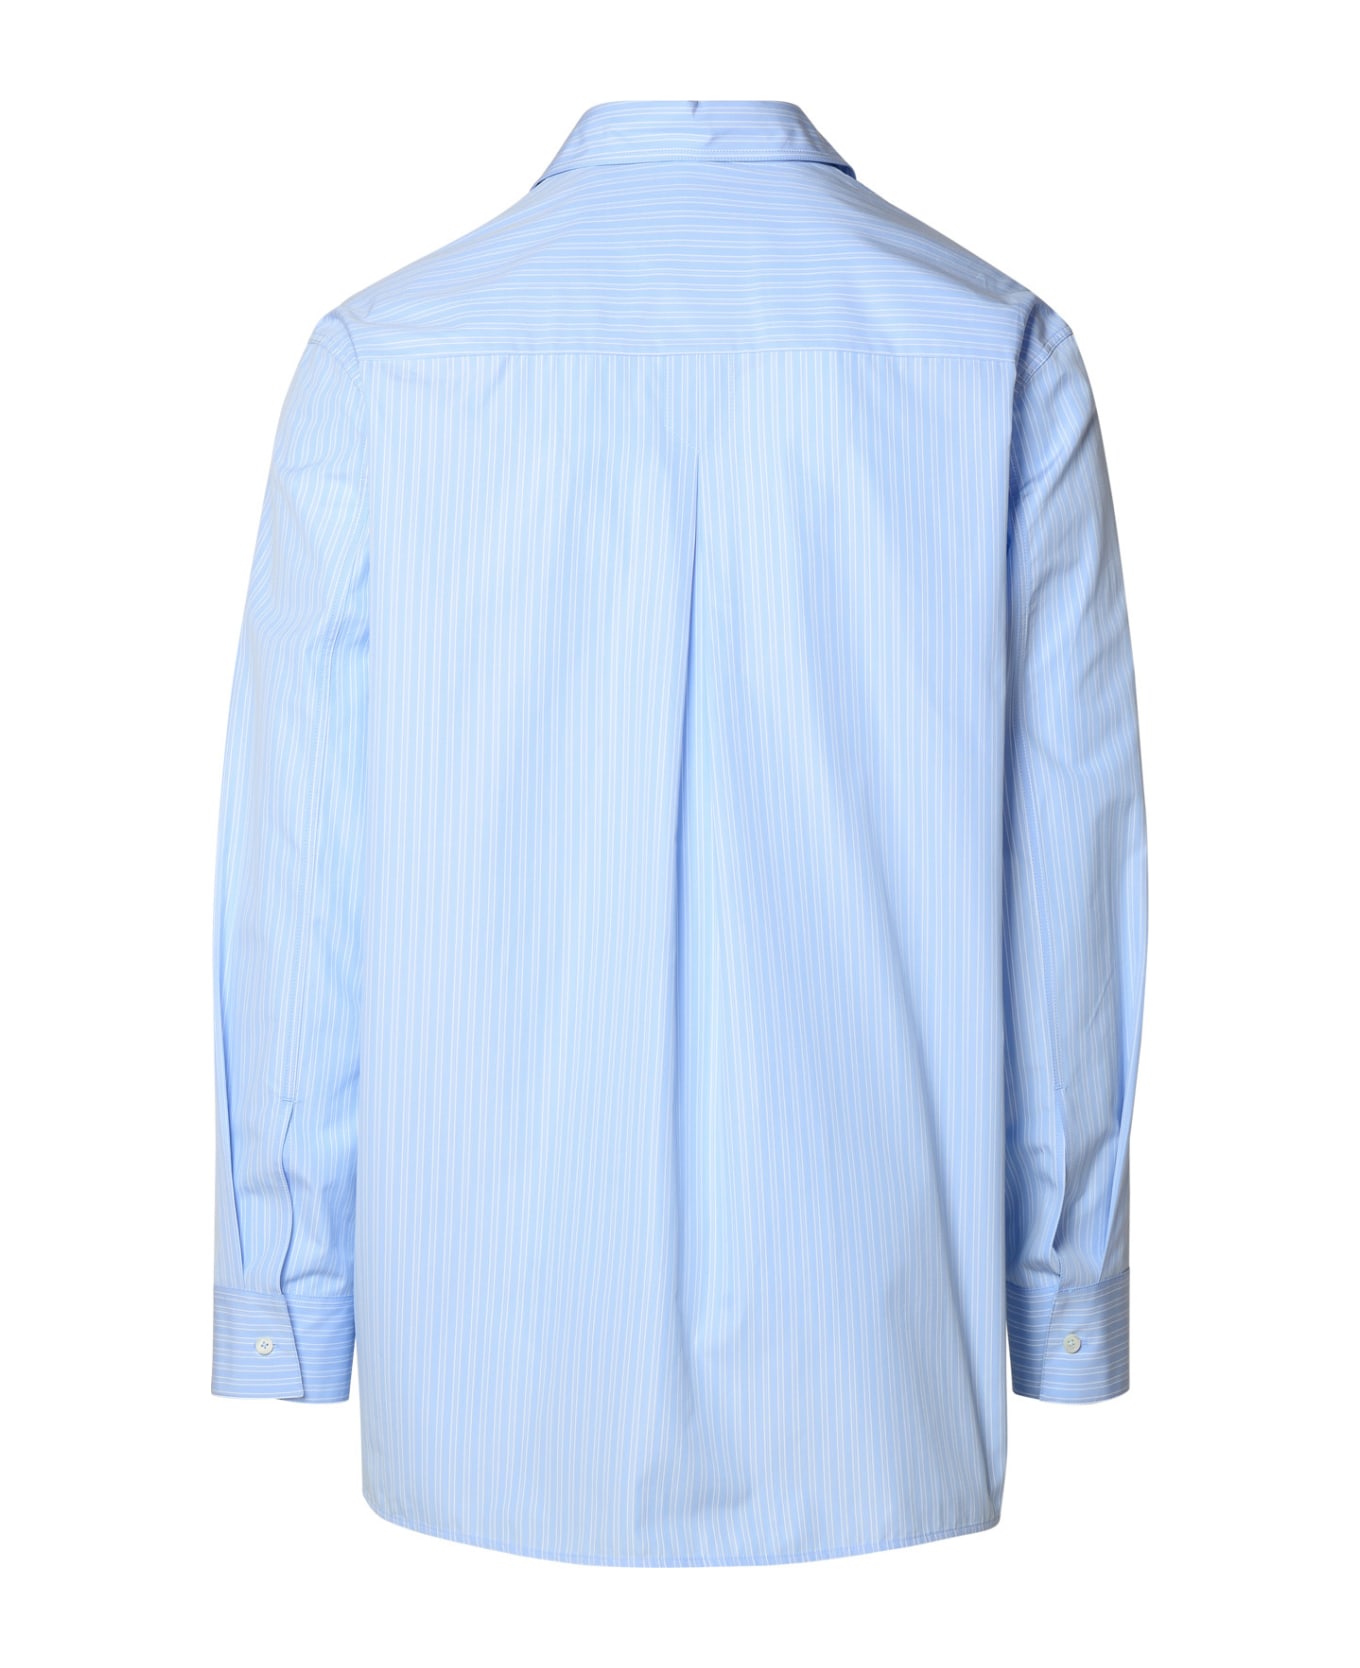 Jil Sander Light Blue Cotton Shirt - Light Blue シャツ